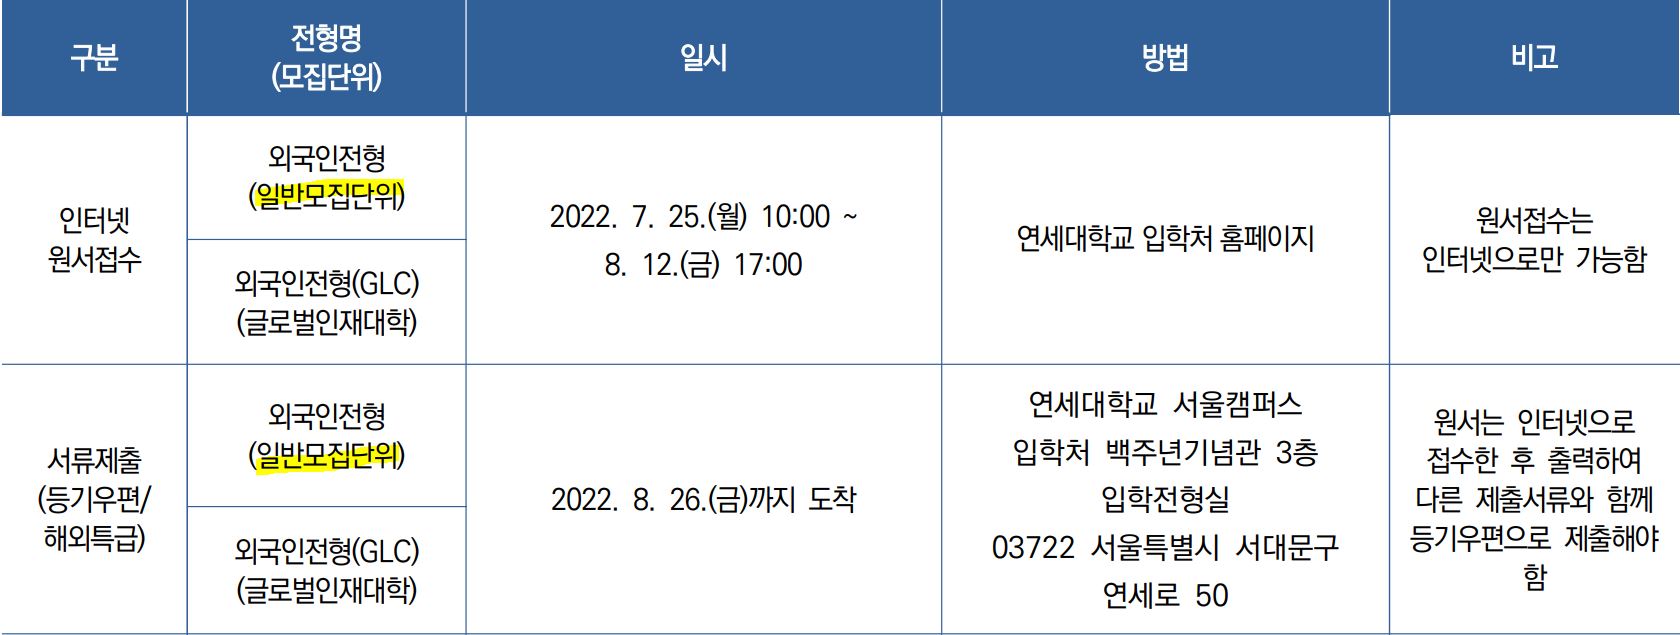 연세대 외국인전형 모집단위 지원자격 전형일정  연세대 일반학과 외국인전형 모집단위 지원자격 전형일정 Yonsei Univ. Admission Majors Eligibility and Schedule   for Foreigners_08_전형일정.JPG